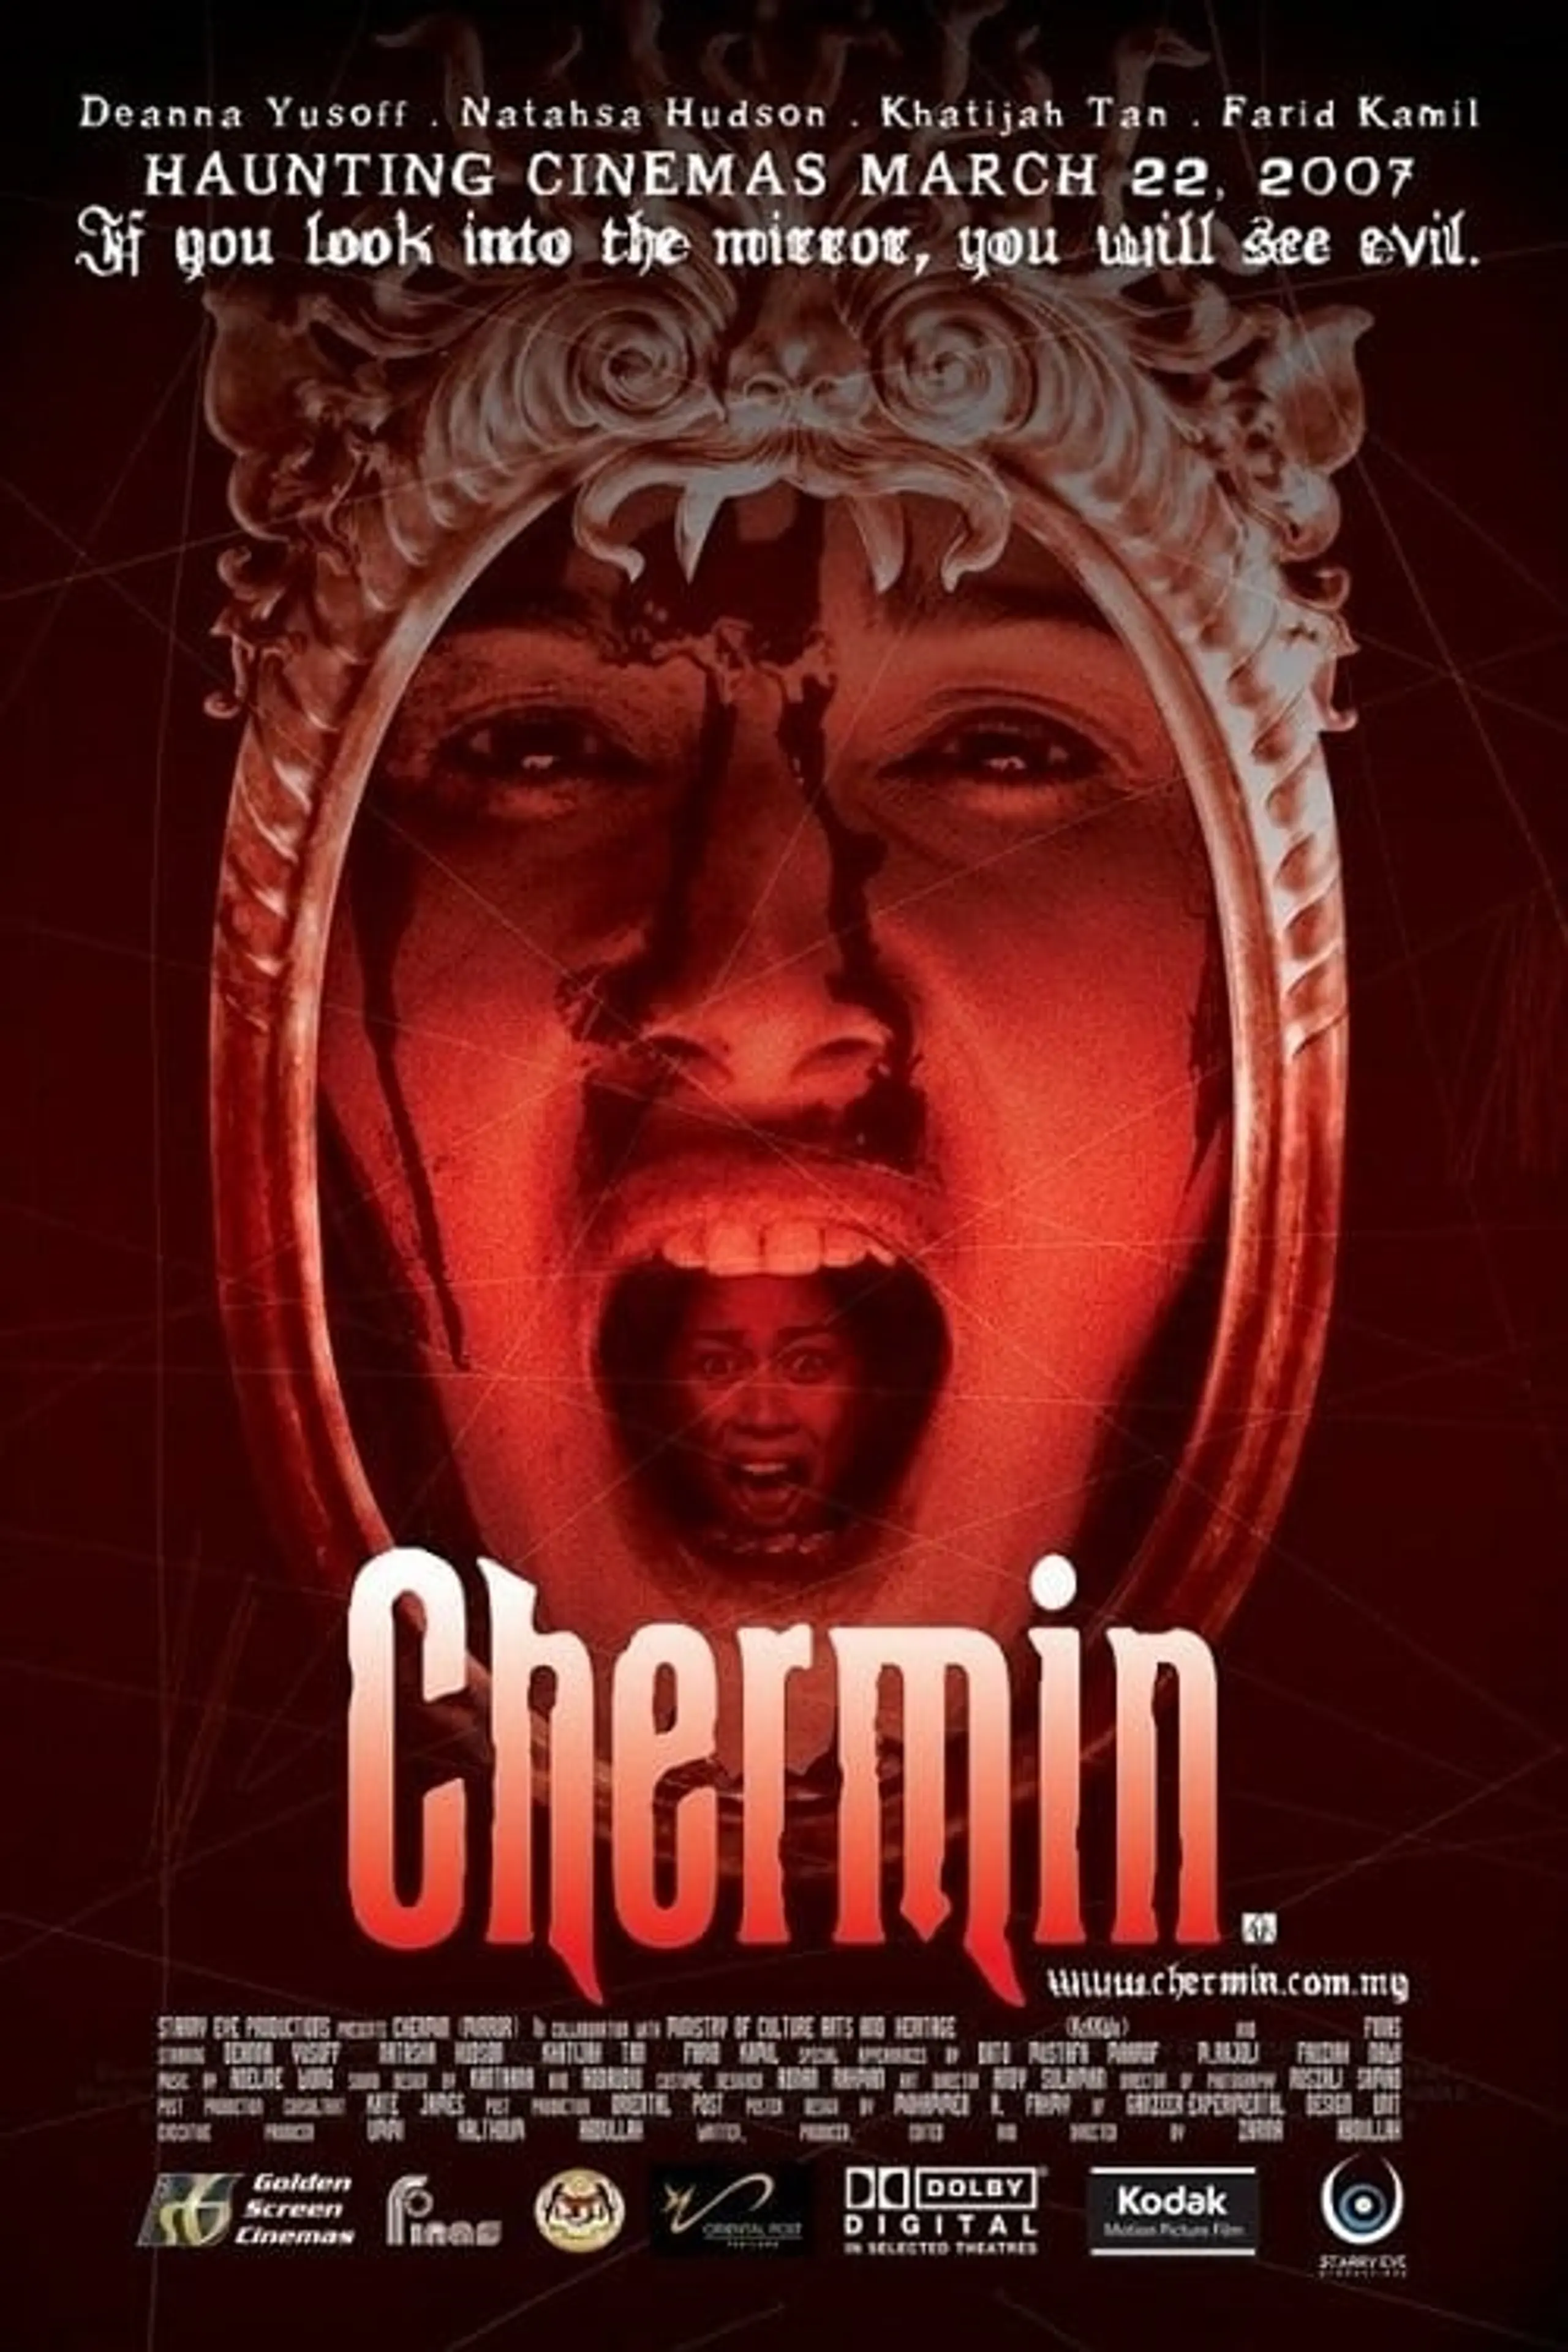 Chermin